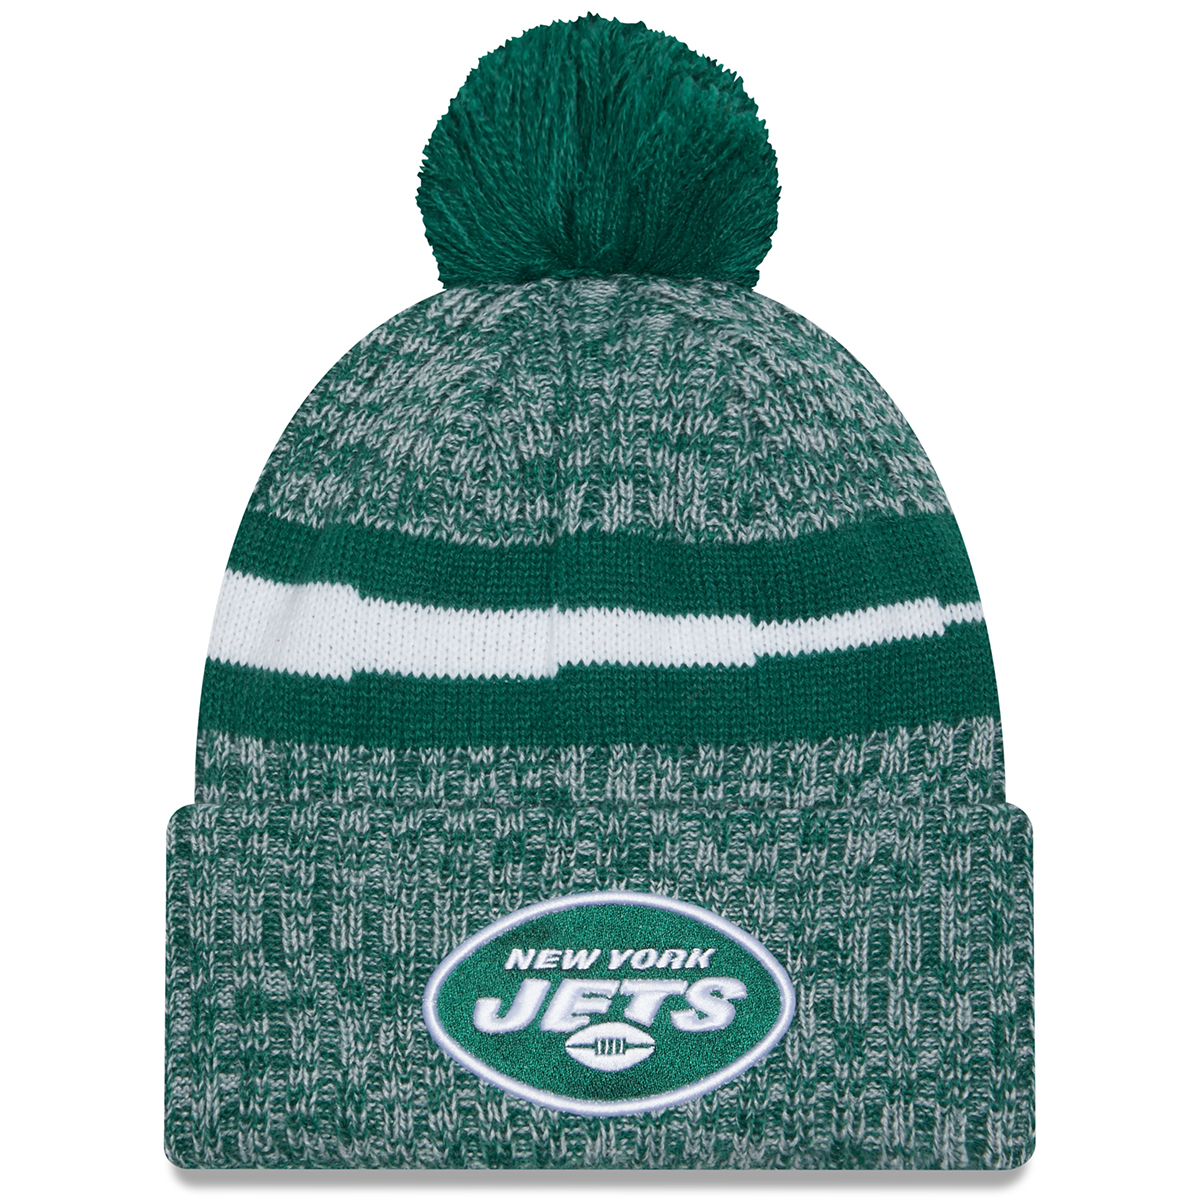 New York Jets New Era Sideline Pom Knit Hat